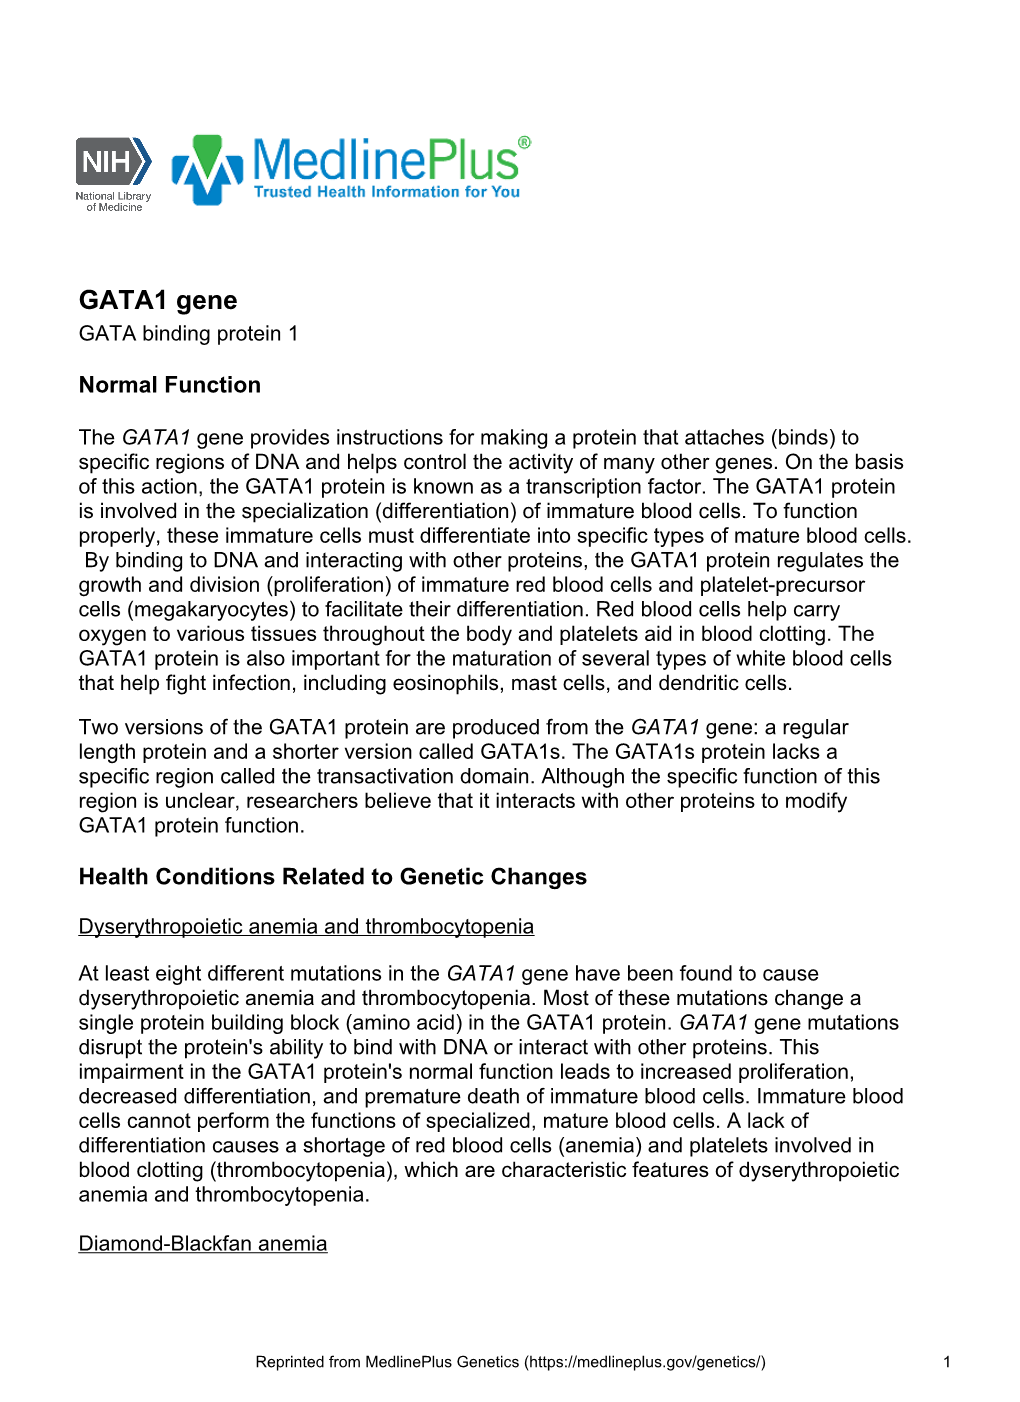 GATA1 Gene GATA Binding Protein 1